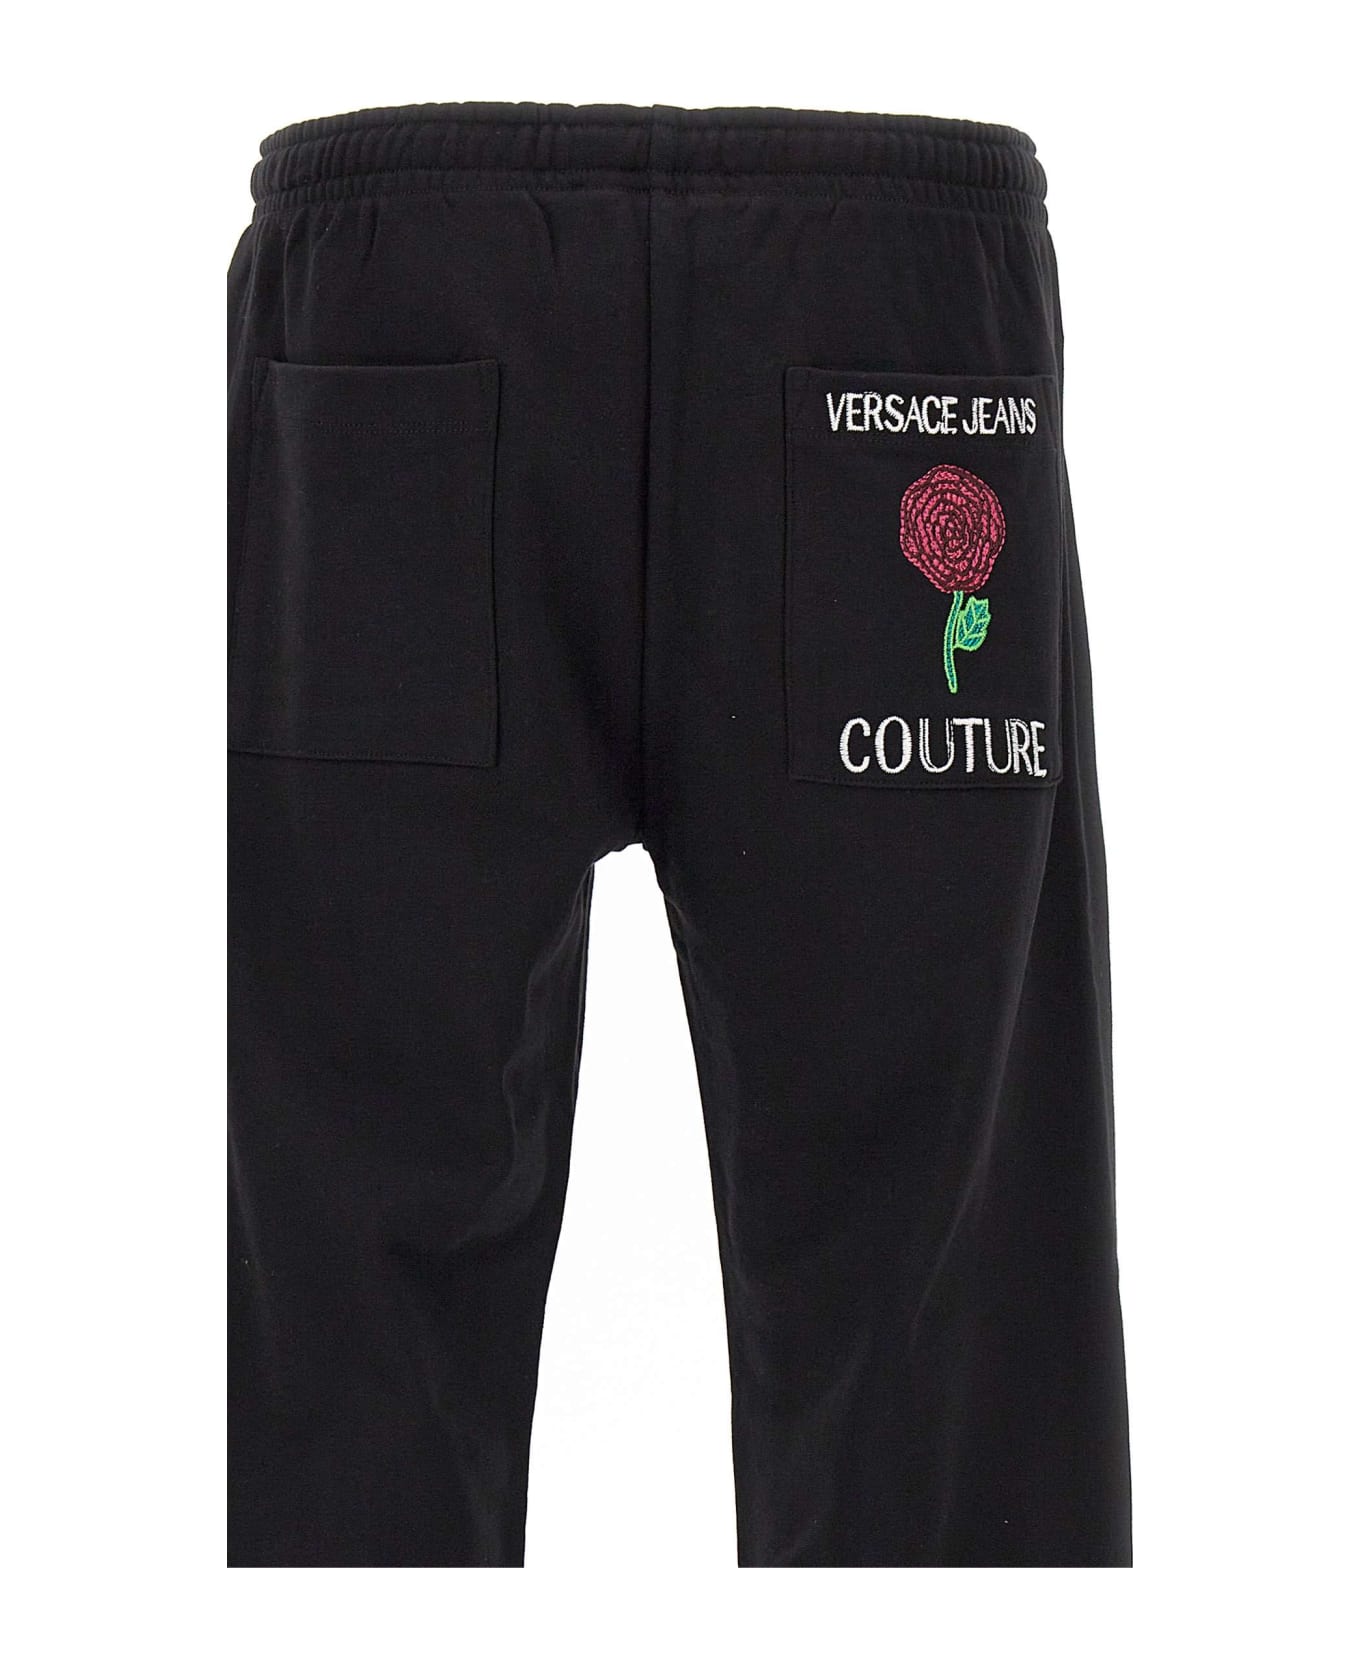 Versace Jeans Couture Cotton Jogger - BLACK